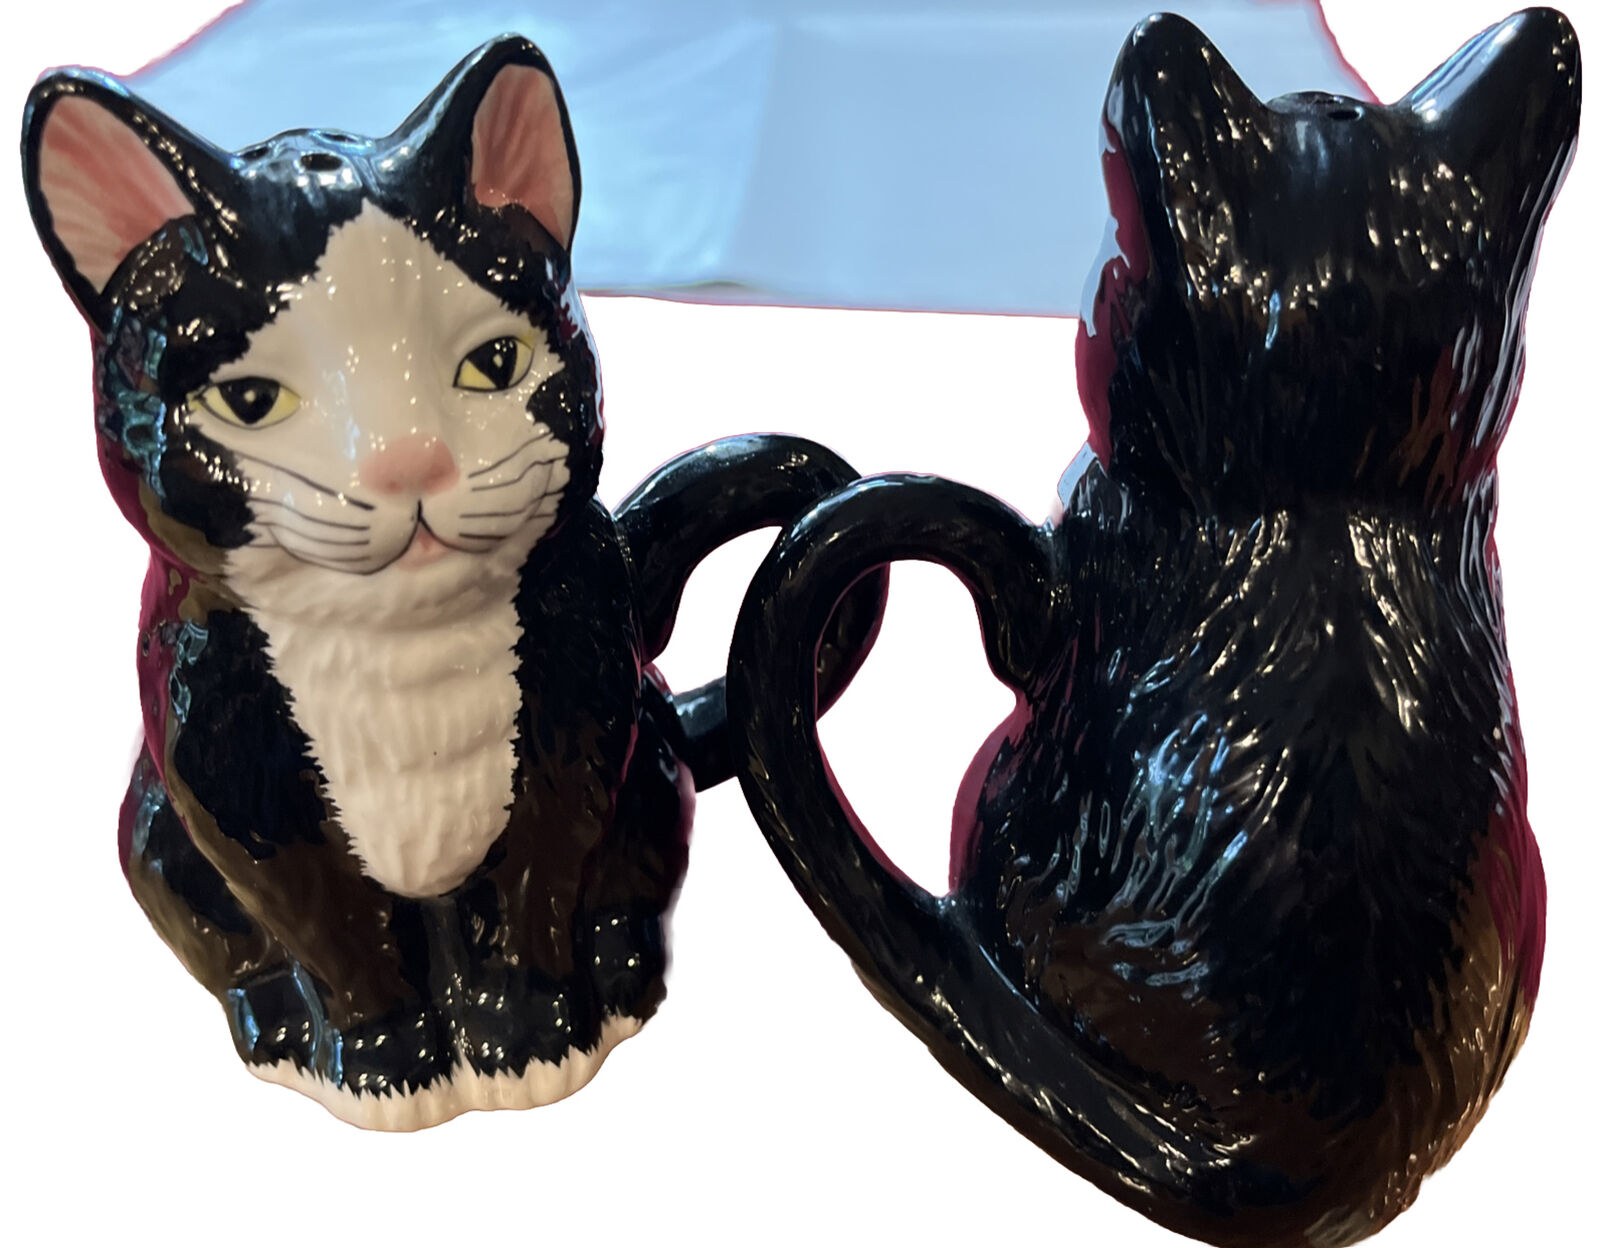 BLACK Kitty CAT Salt Pepper Shakers SET OF 2 handled 5” Tall TAIWAN B W Ceramic